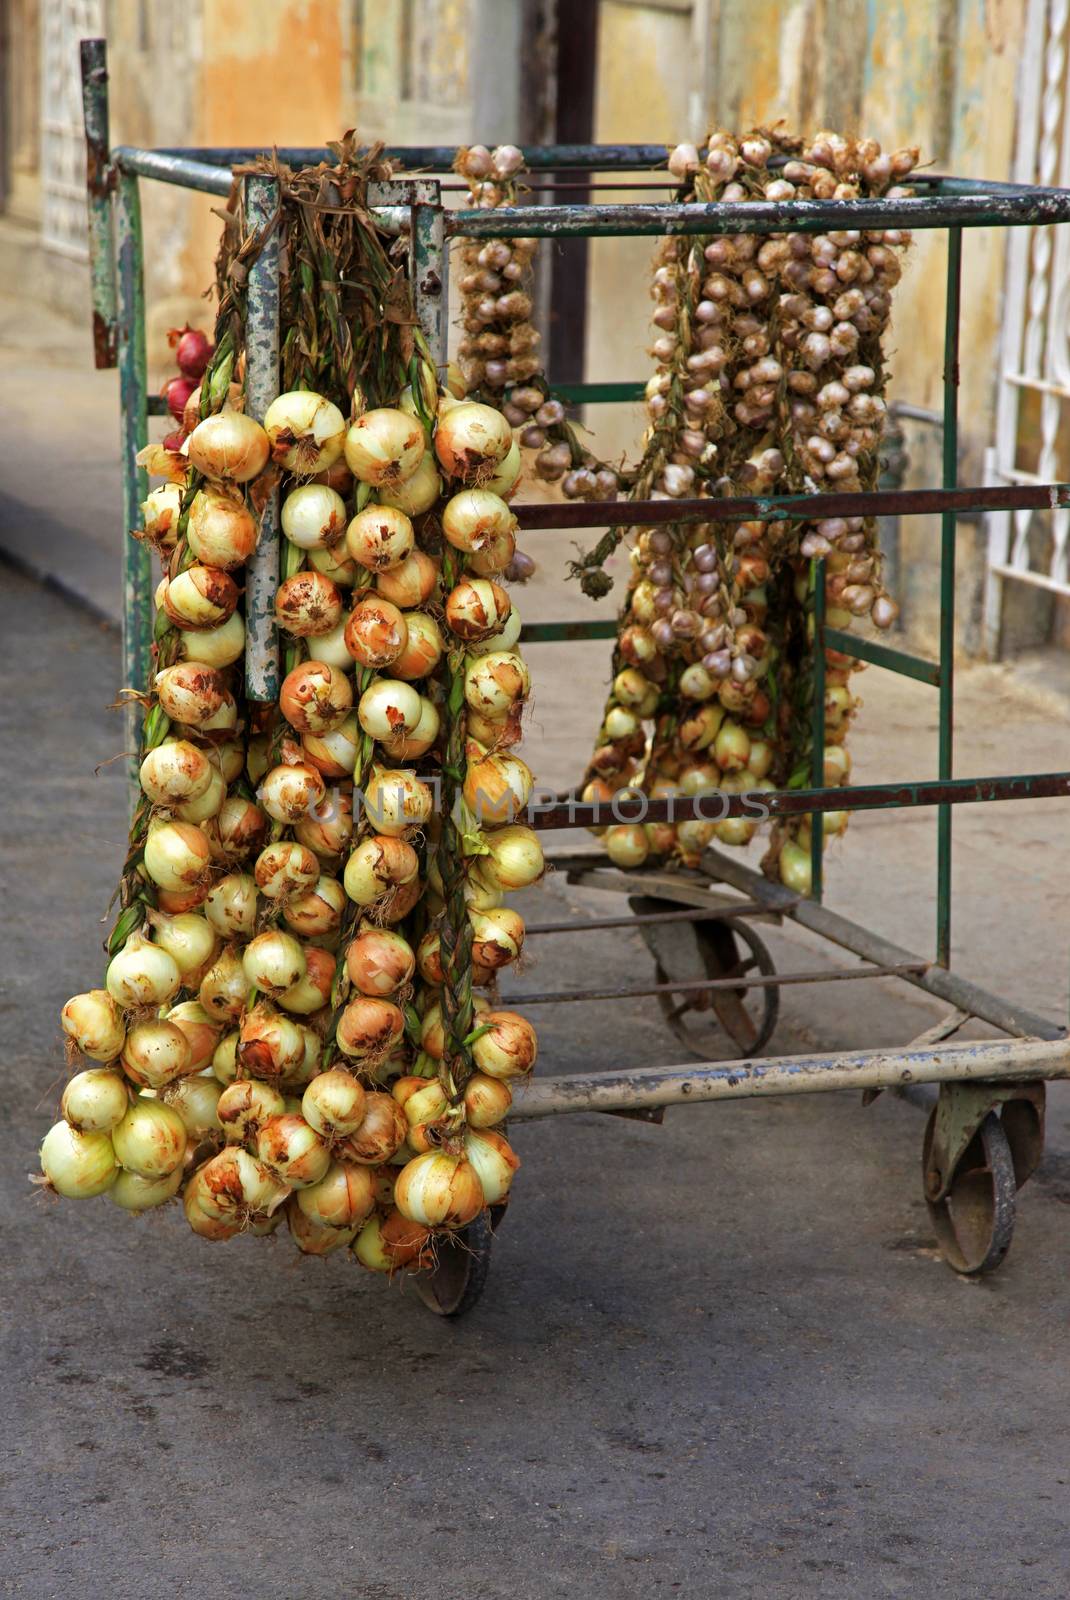 Selling onions on the street in Old Havana, Cuba